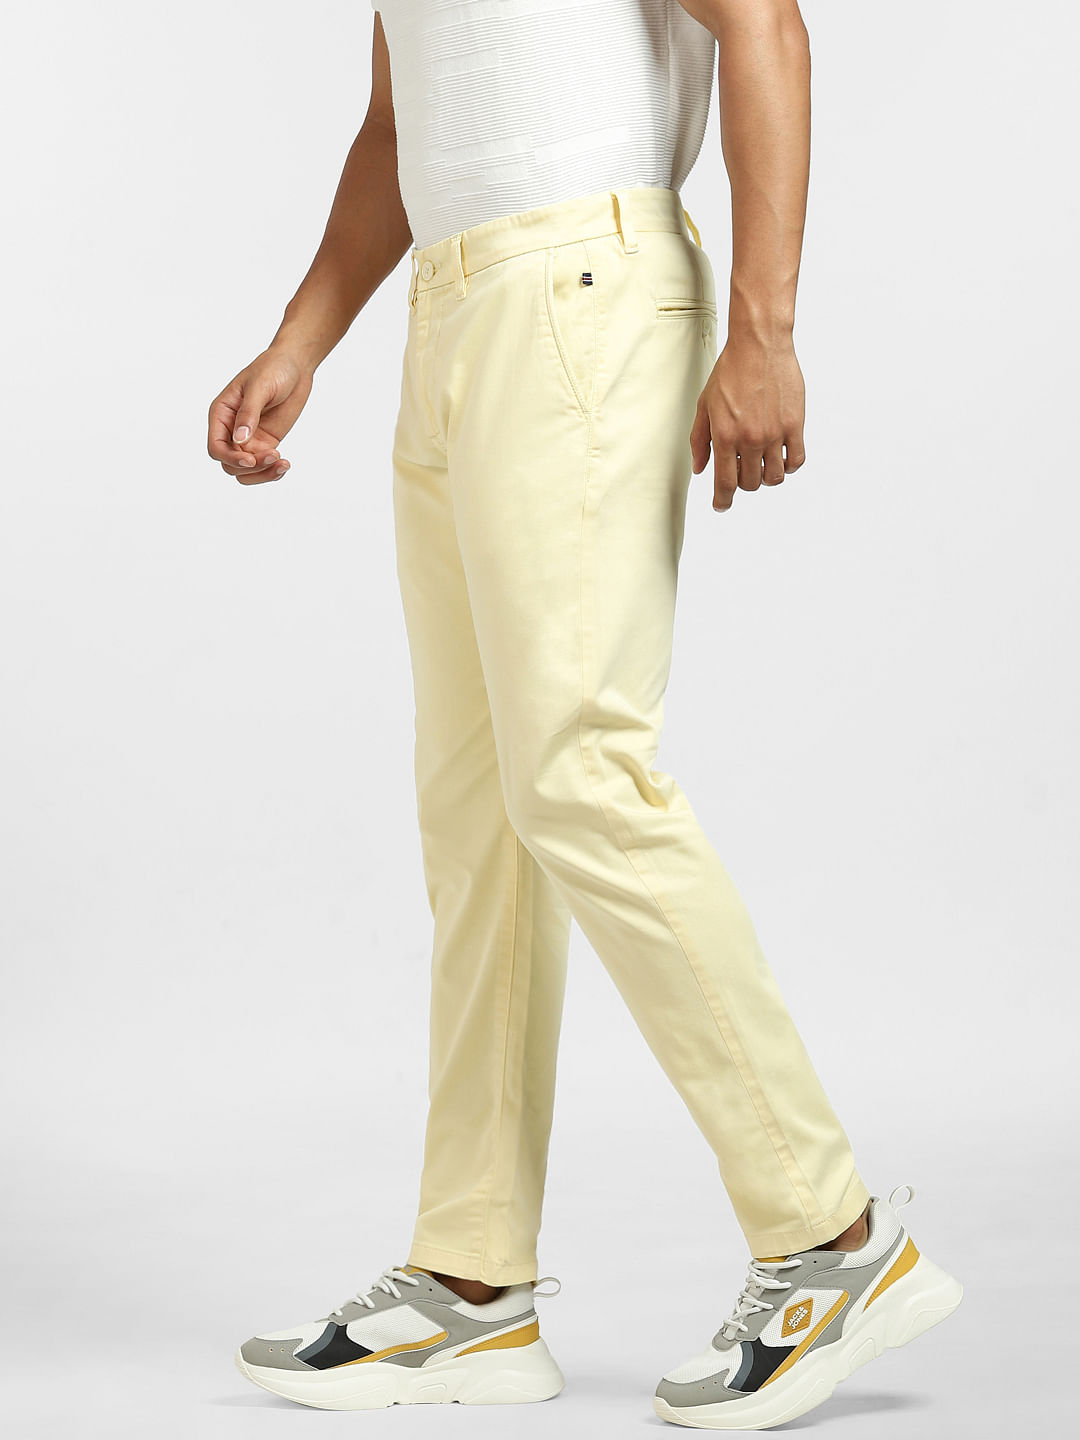 Maize Light Brown PlainSolid Premium Cotton Pant For Men